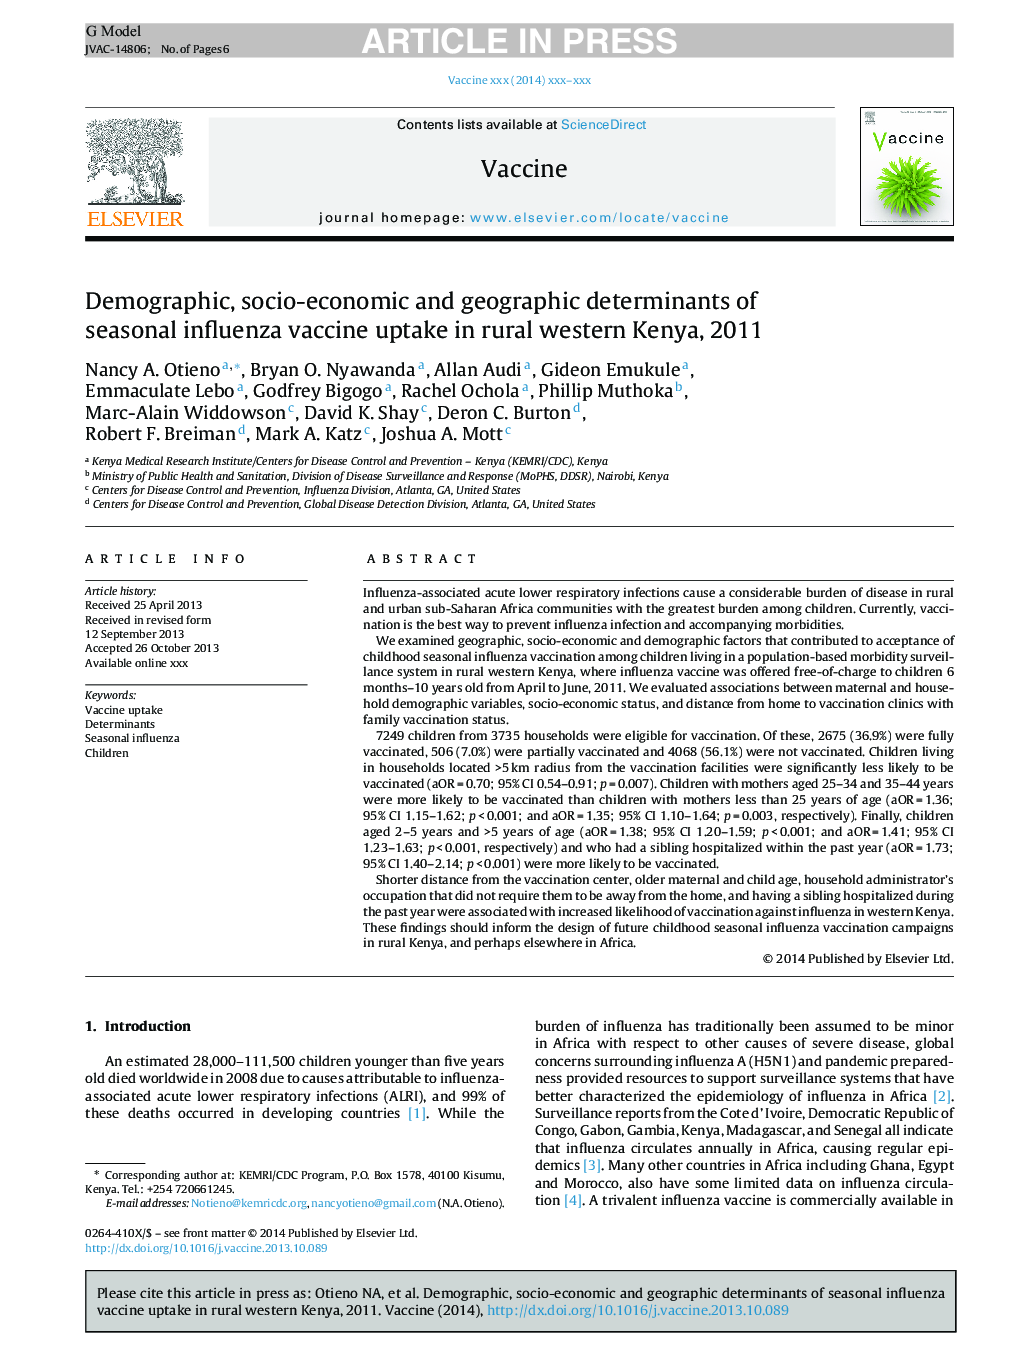 تعیین کننده های جمعیت شناسی، اجتماعی-اقتصادی و جغرافیایی جذب واکسن فصلی آنتی بیوتیک در مناطق روستایی کنیا، 2011 